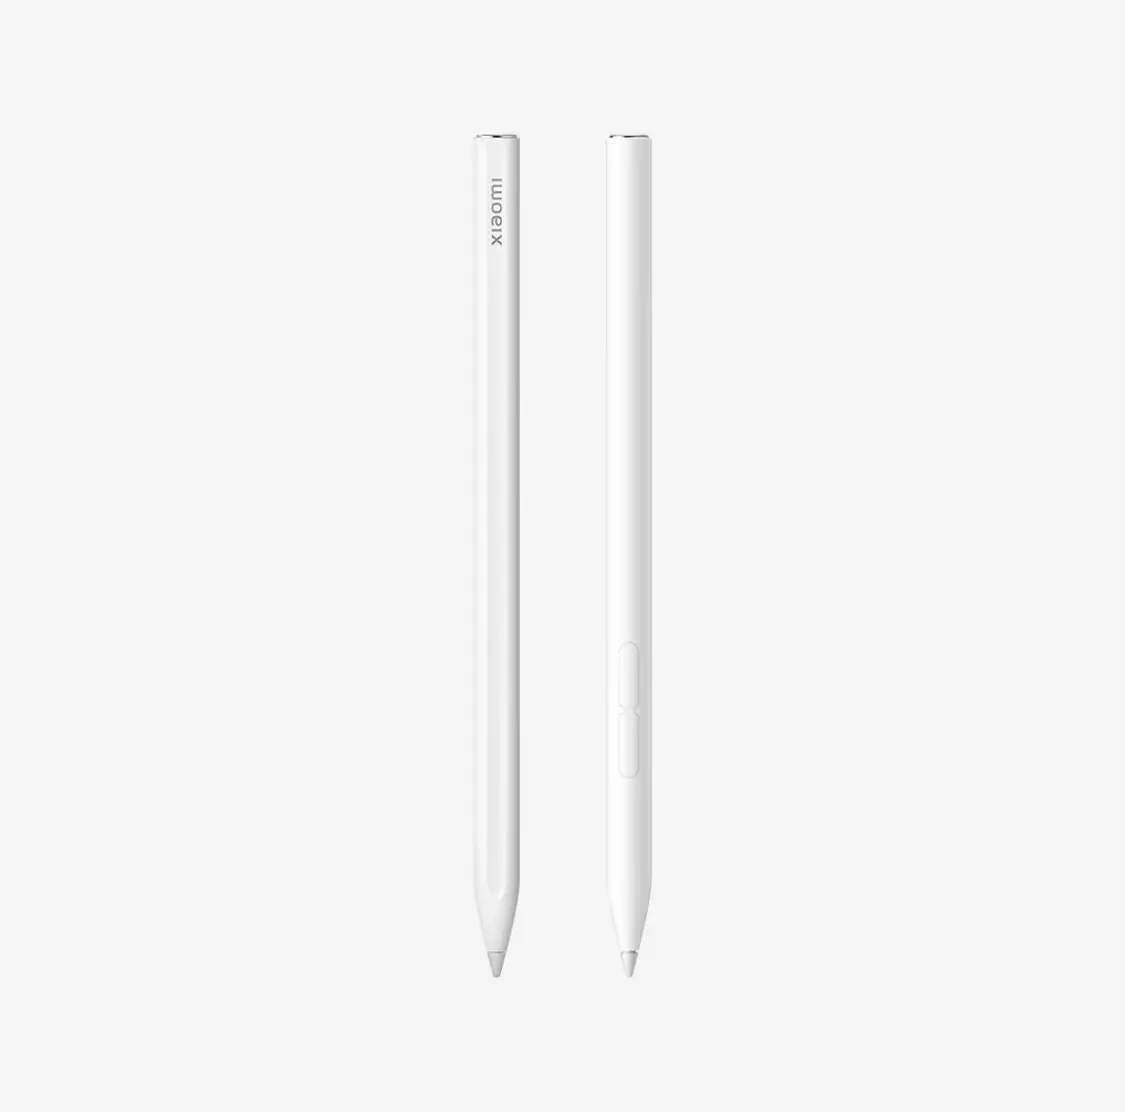 Xiaomi-Stylet magnétique blanc pour tablette MI PAD 6 / 6 pro / 5